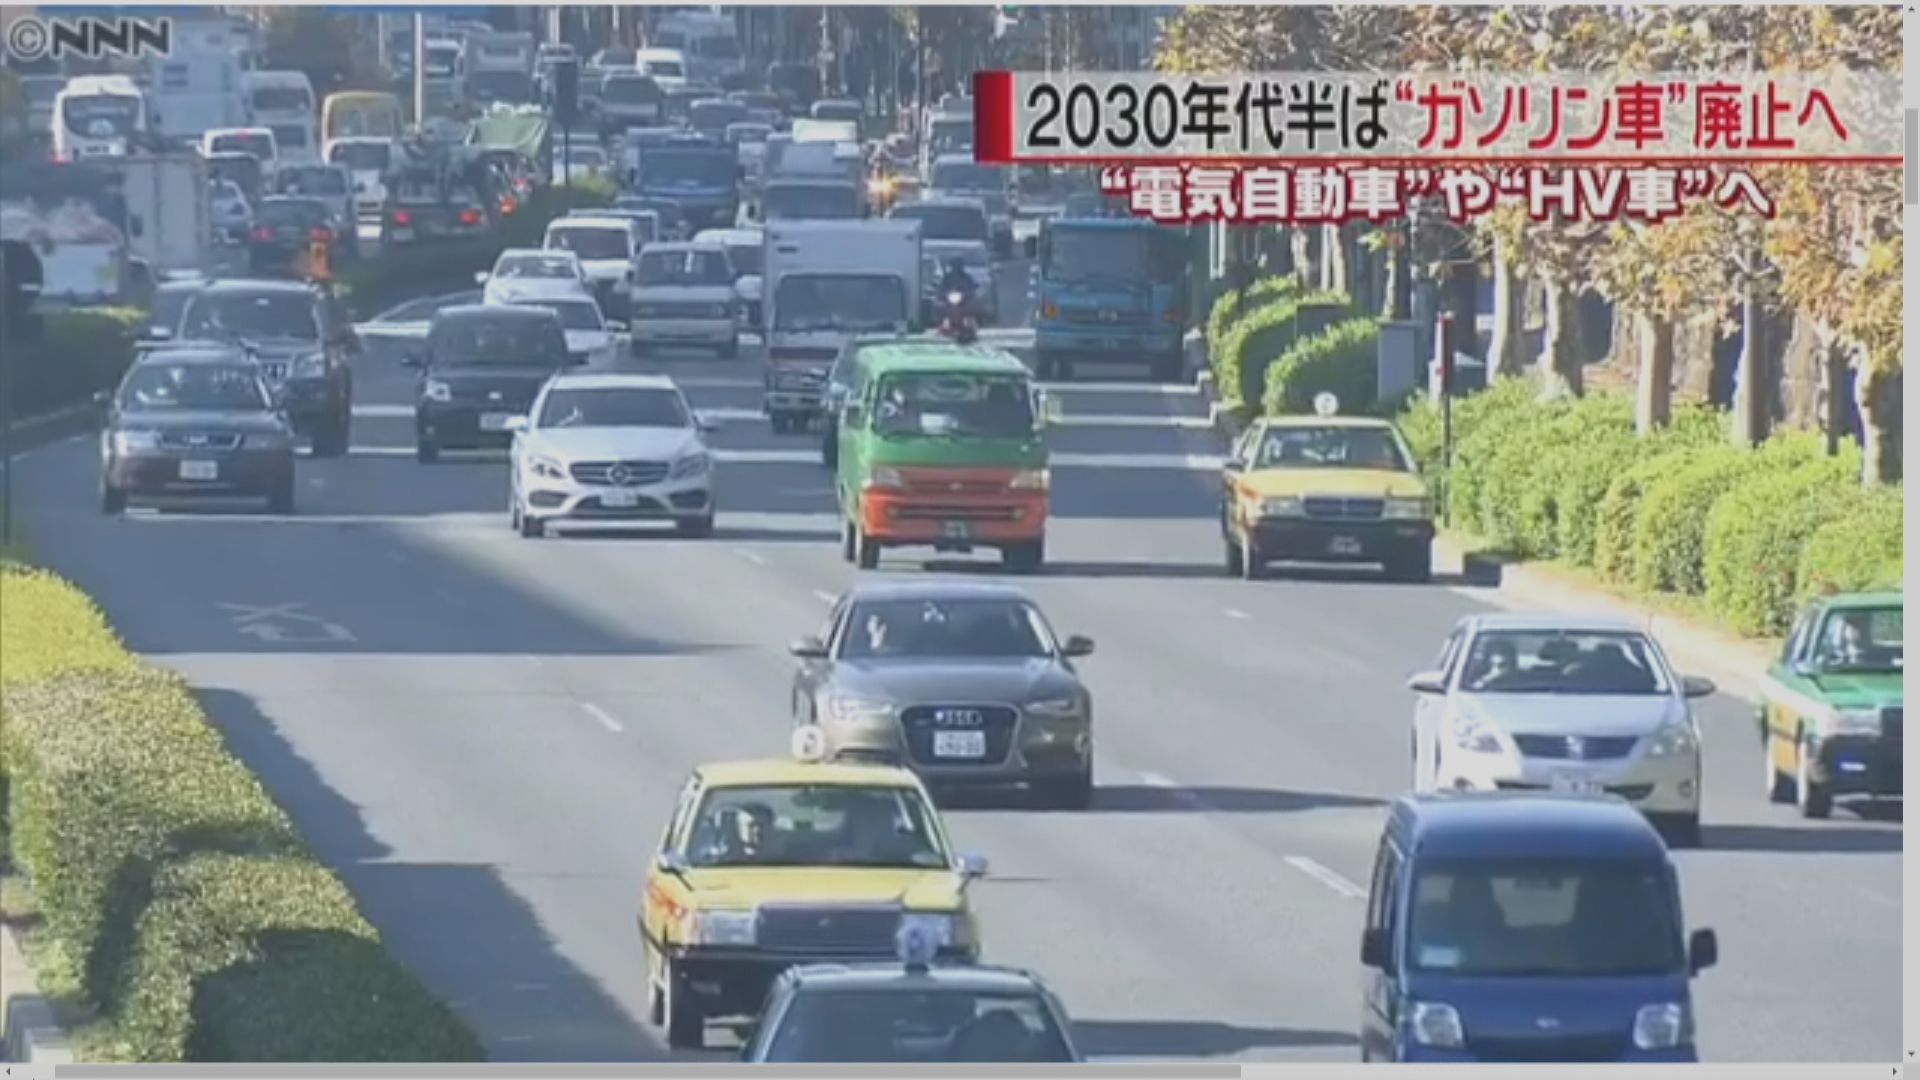 據報日本擬於2035年前後禁售傳統燃油汽車